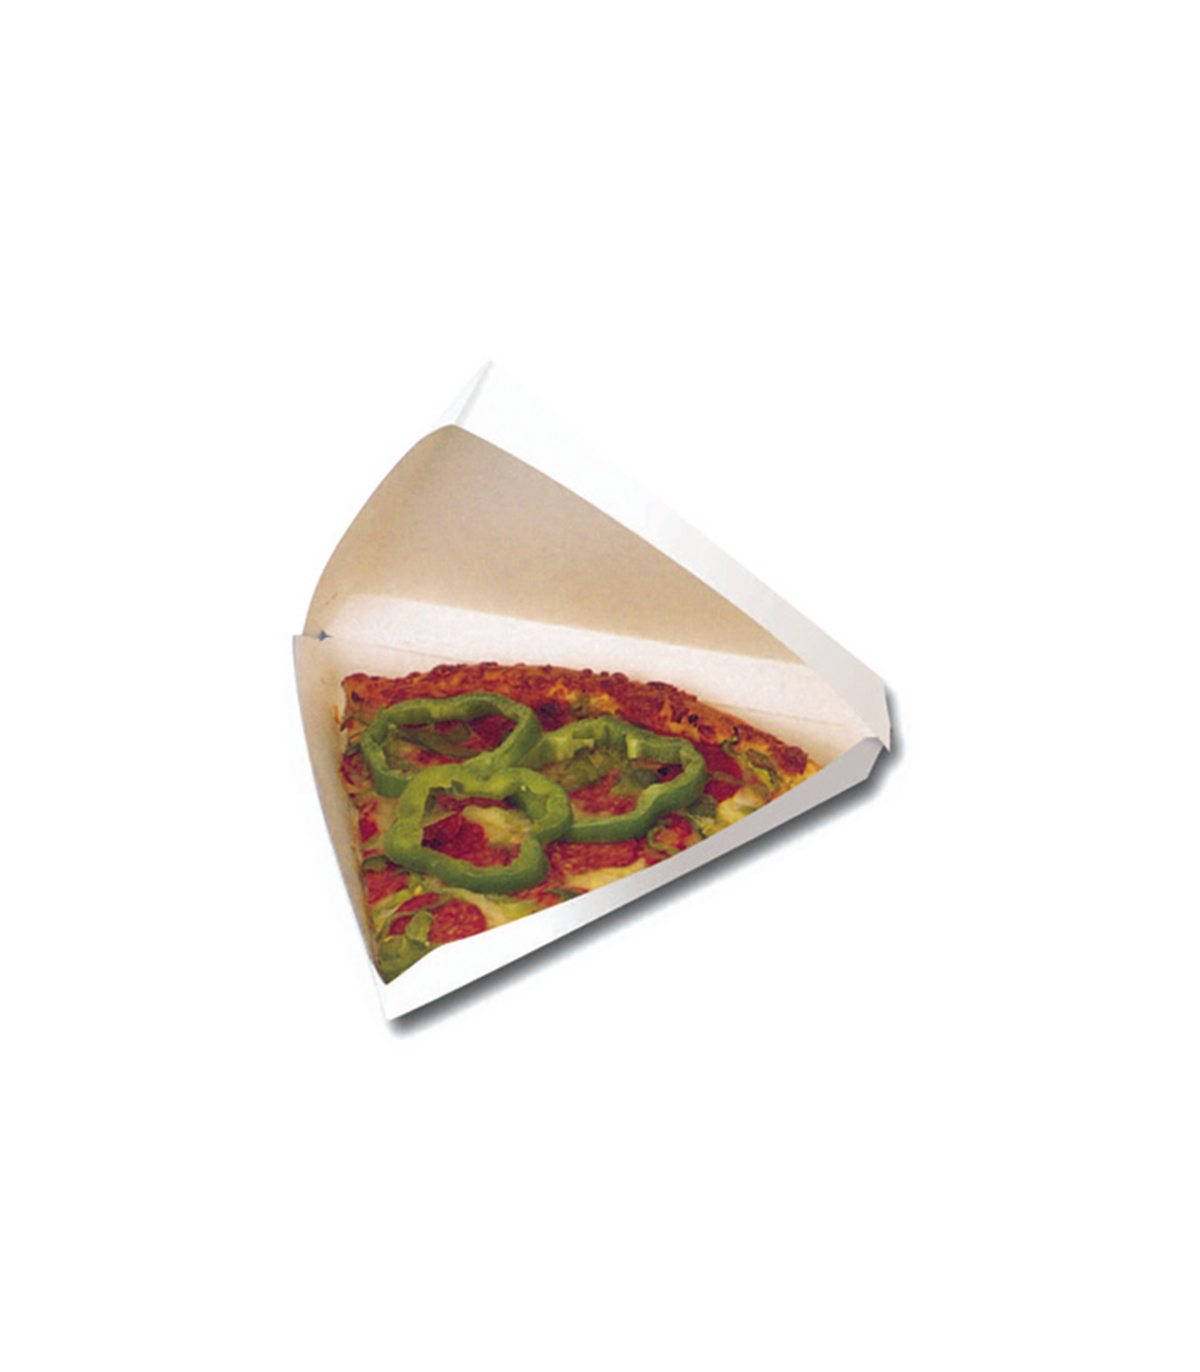 Boite carton blanc triangulaire pour part de pizza 850ml H45mm